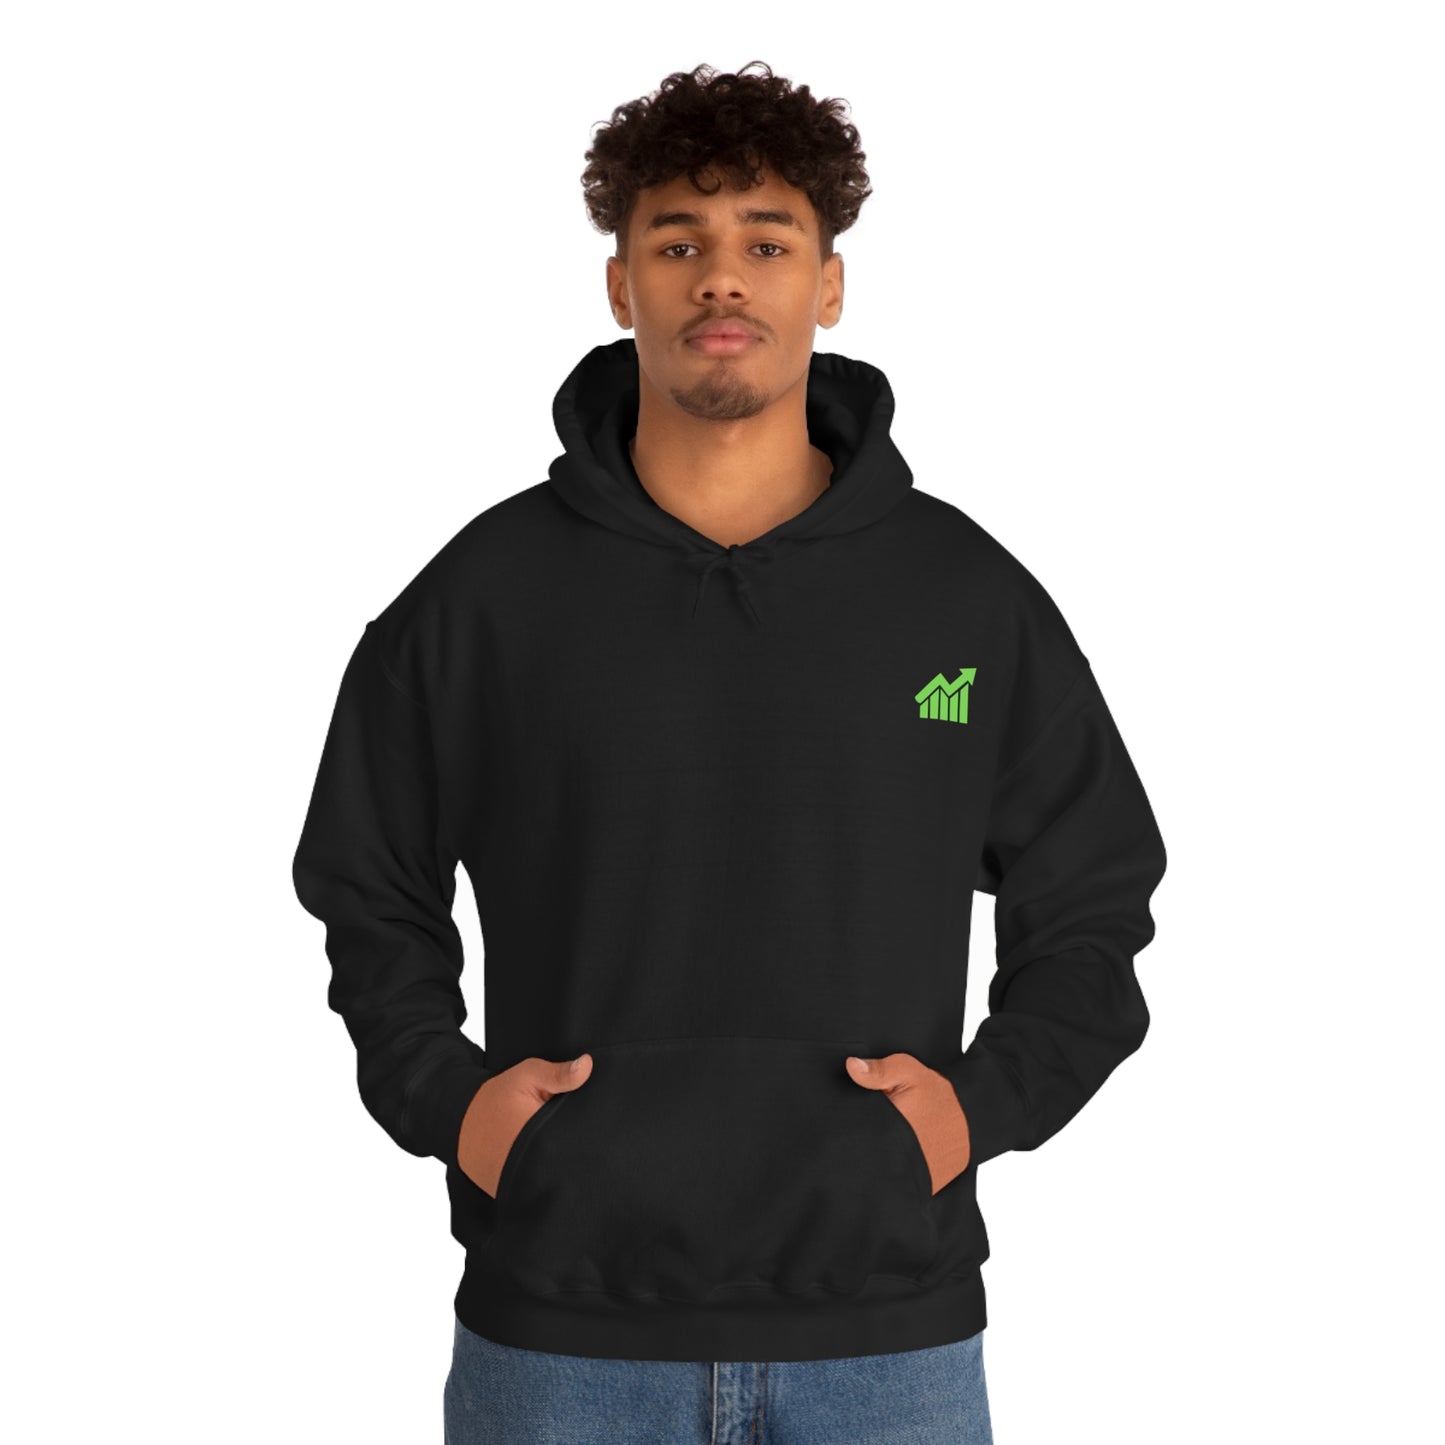 Green arrow Unisex Heavy Blend™ Hooded Sweatshirt